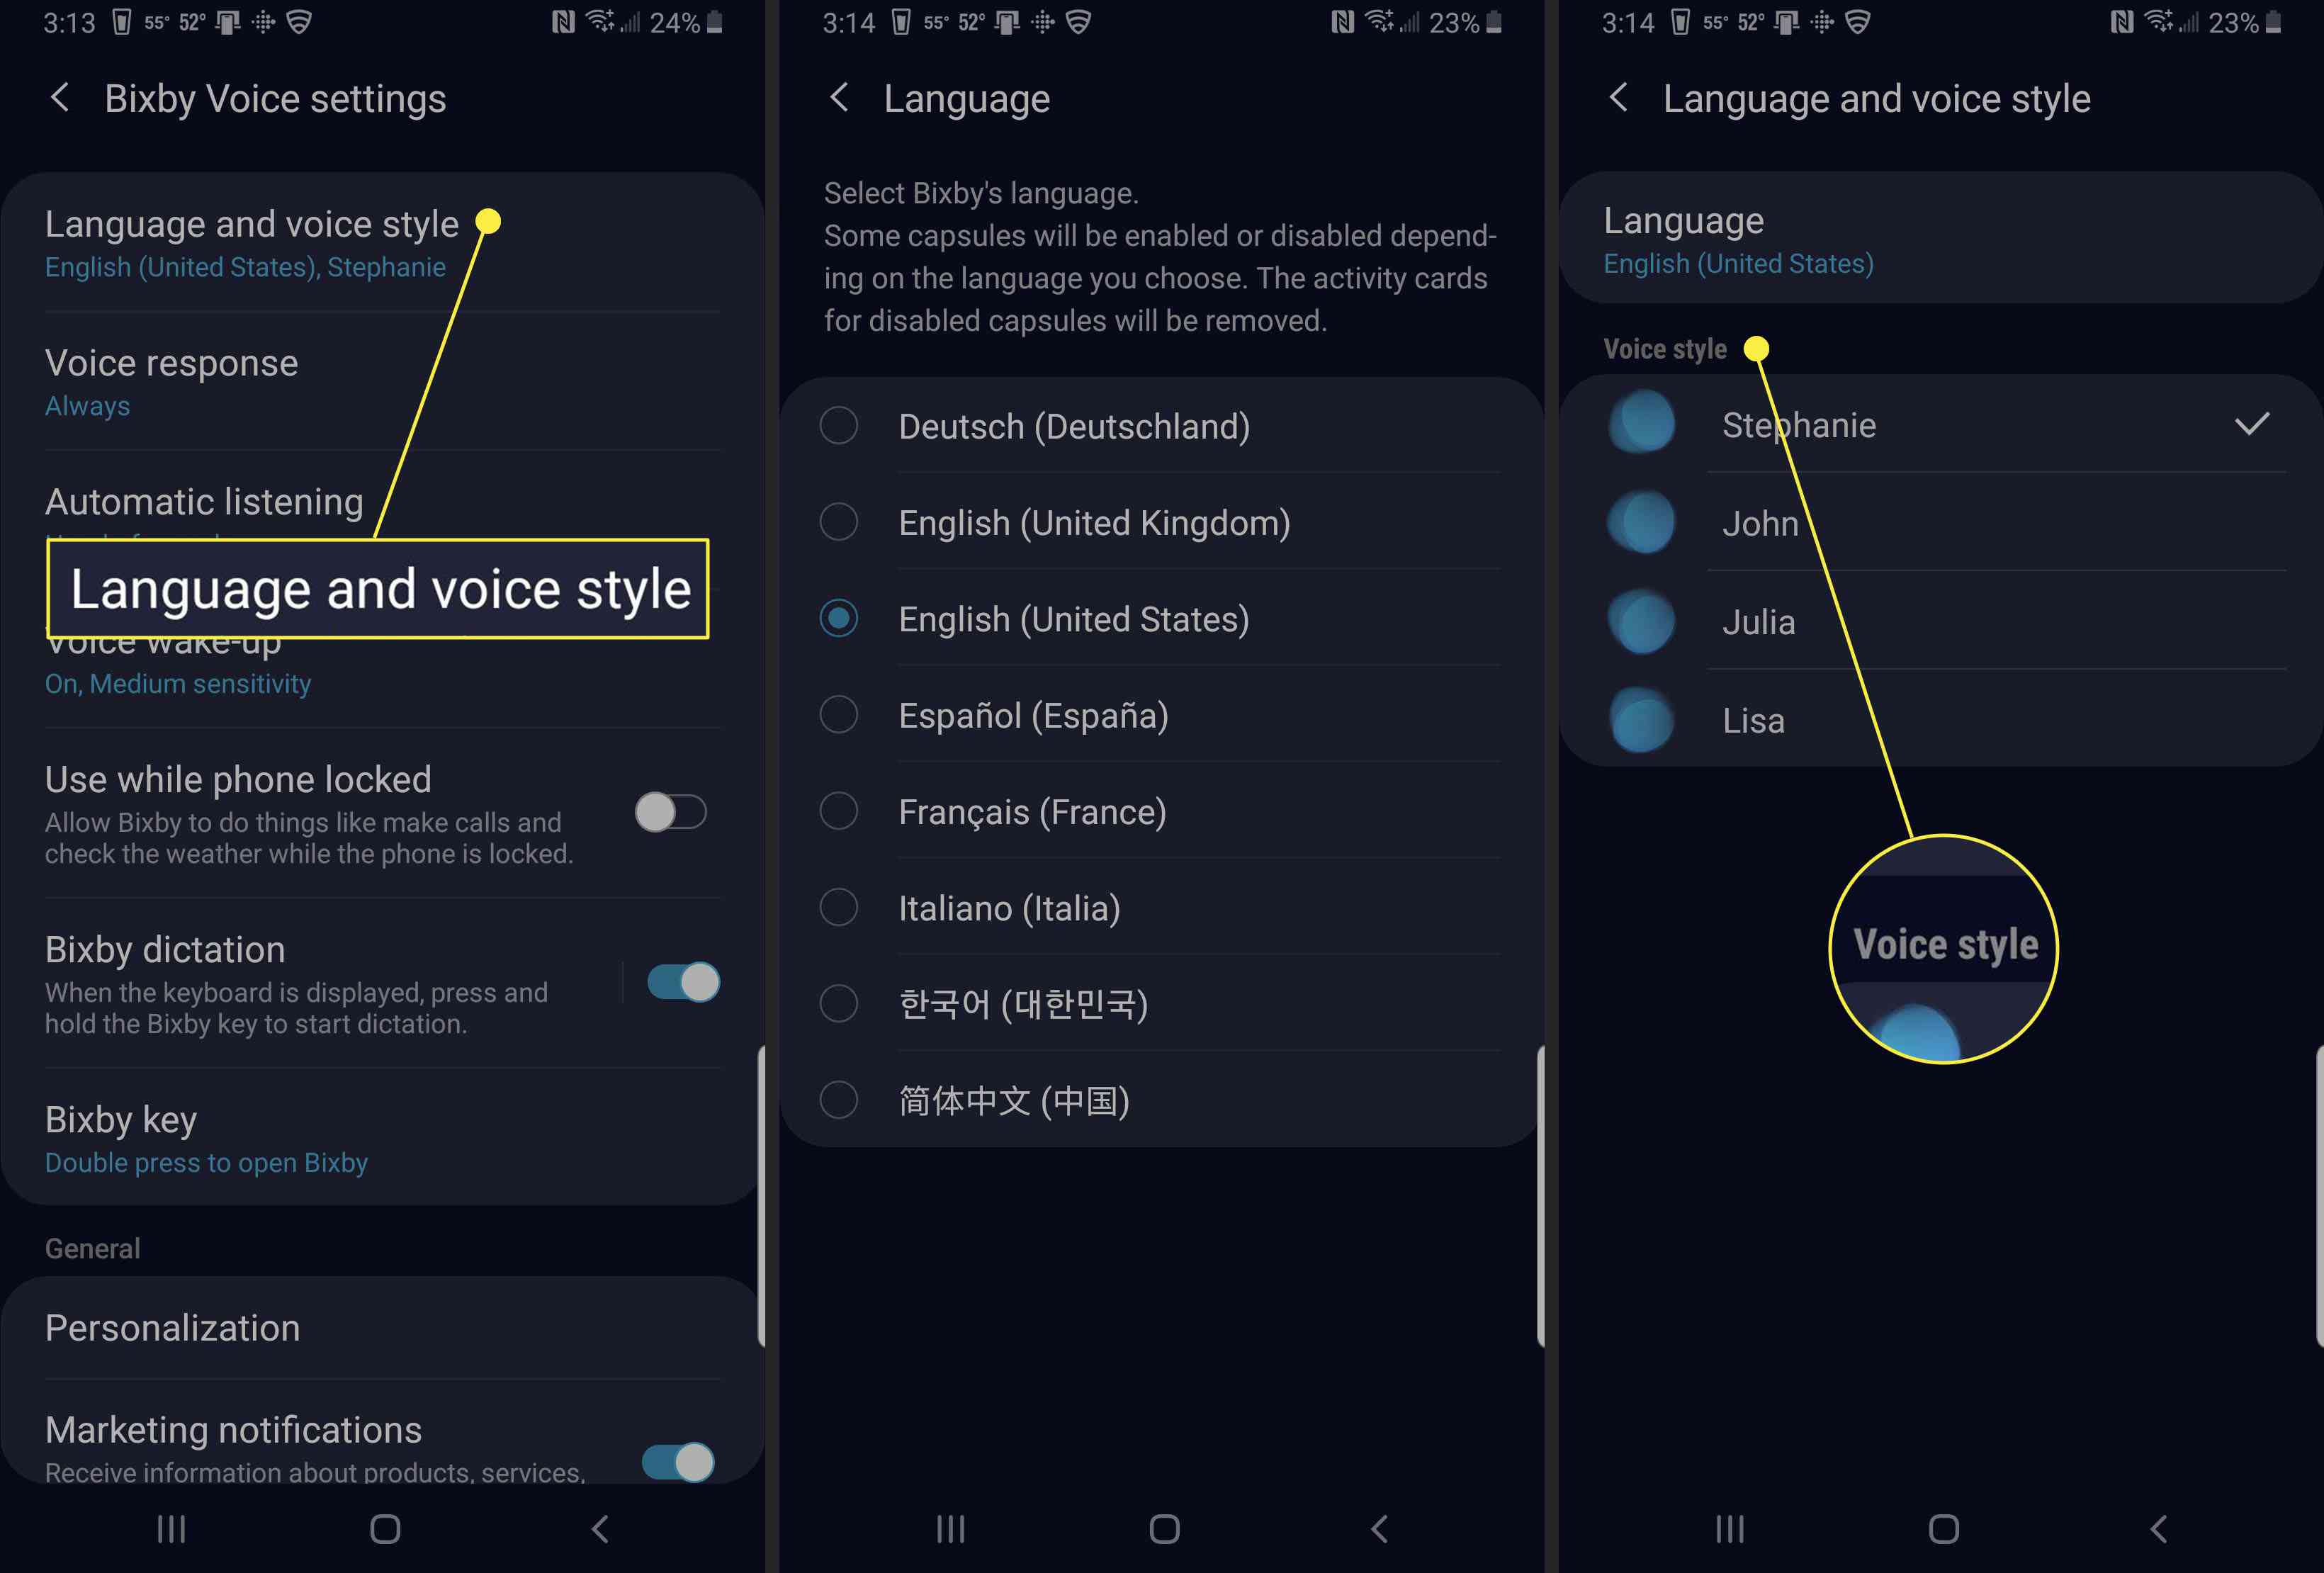 Configurando voz e idioma para Bixby.